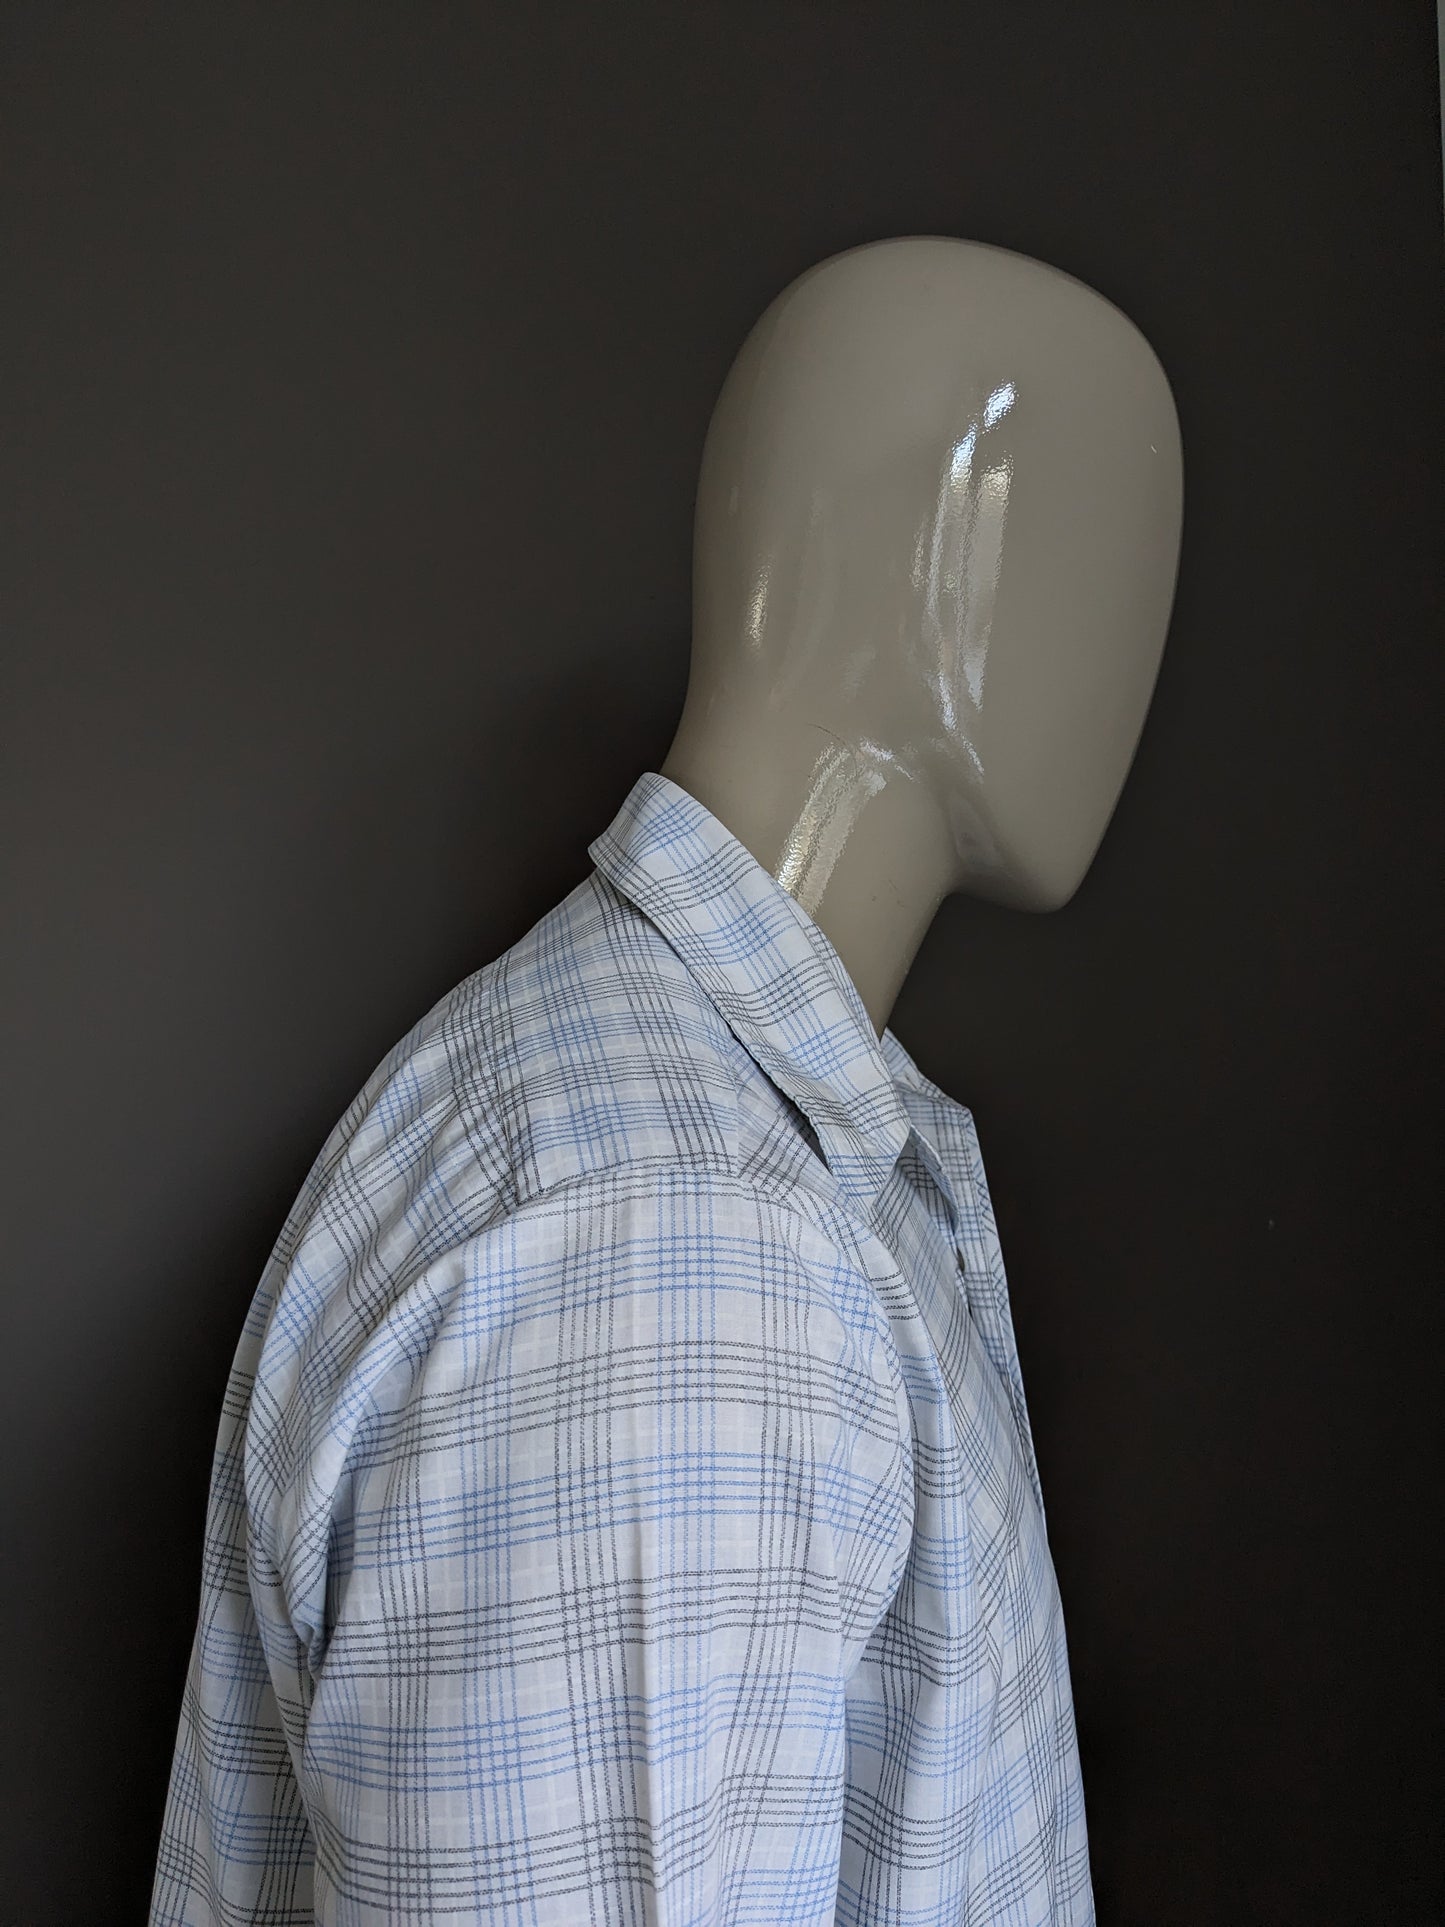 Shirt de l'amitié vintage des années 70 avec collier. Bleu blanc vérifié. Taille xl.